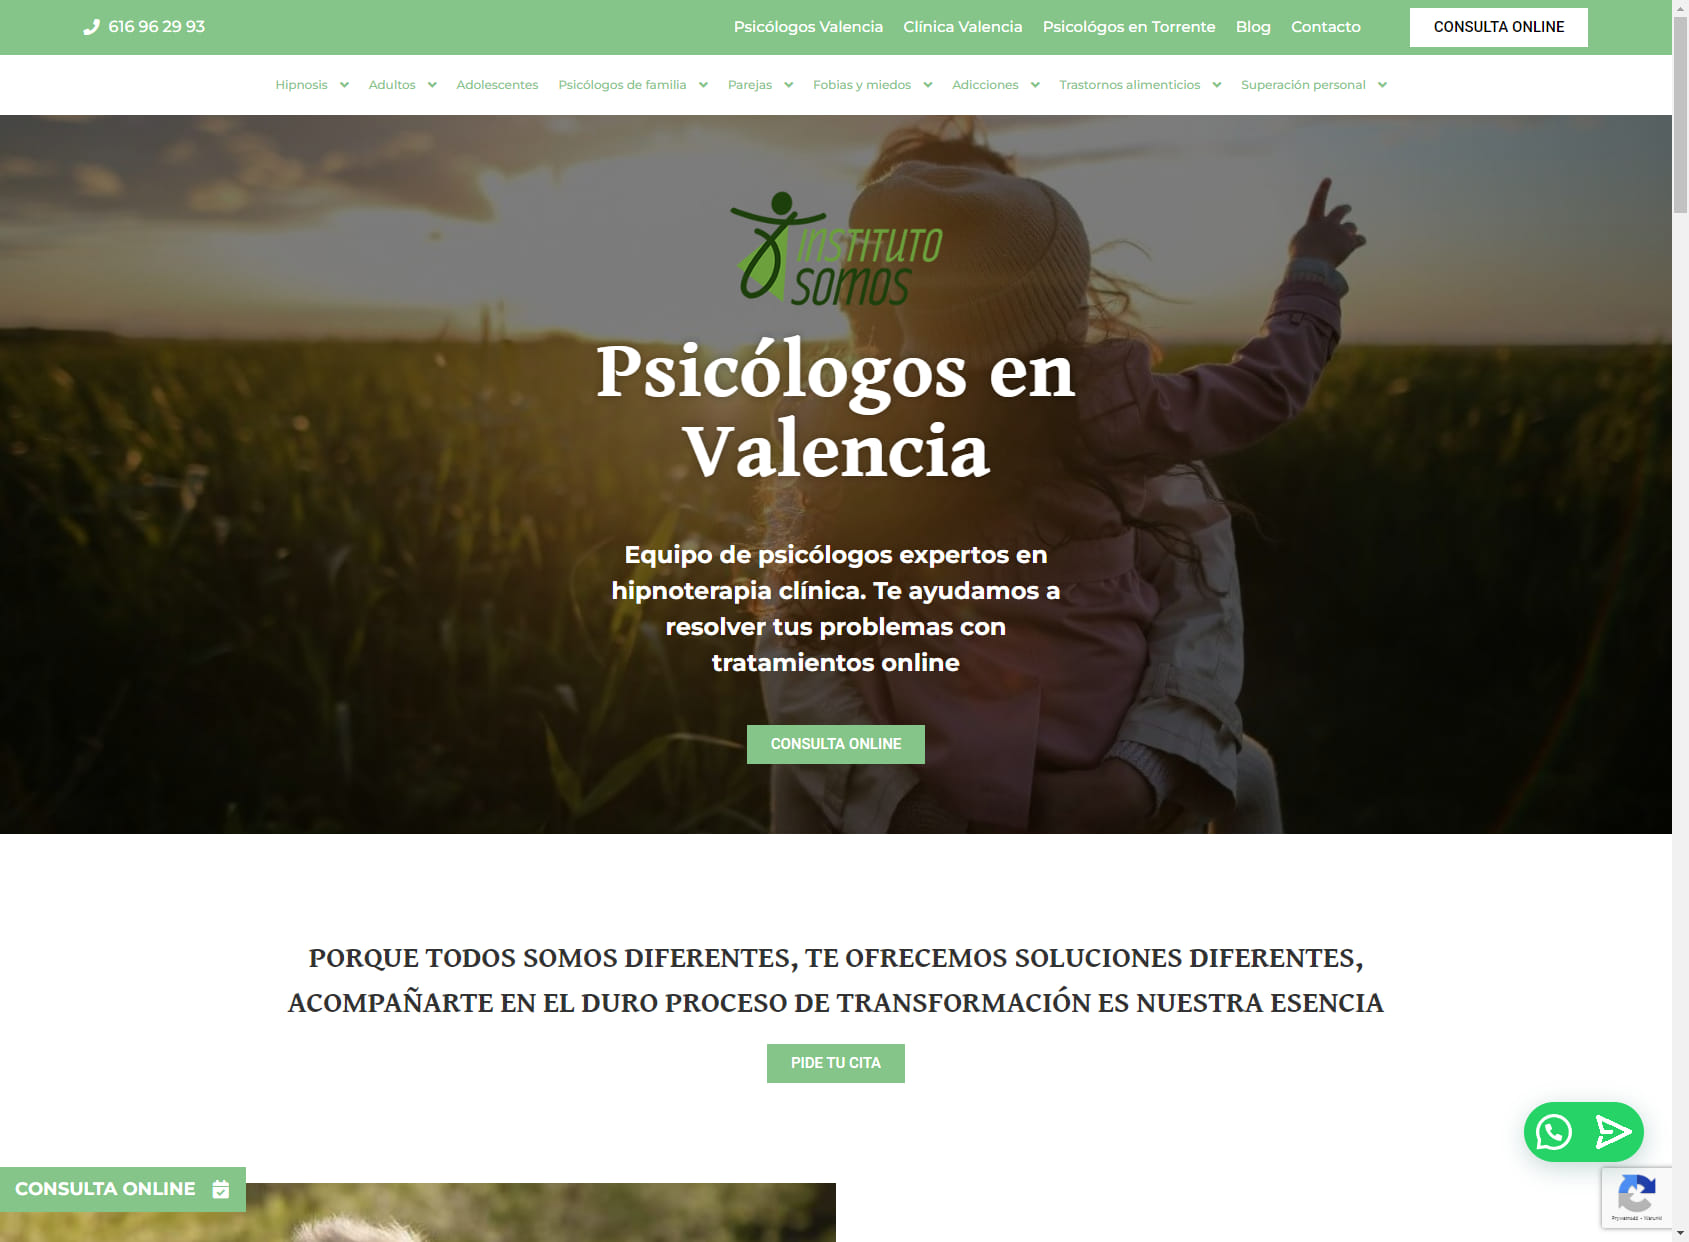 Instituto Somos | Psicólogos en Valencia